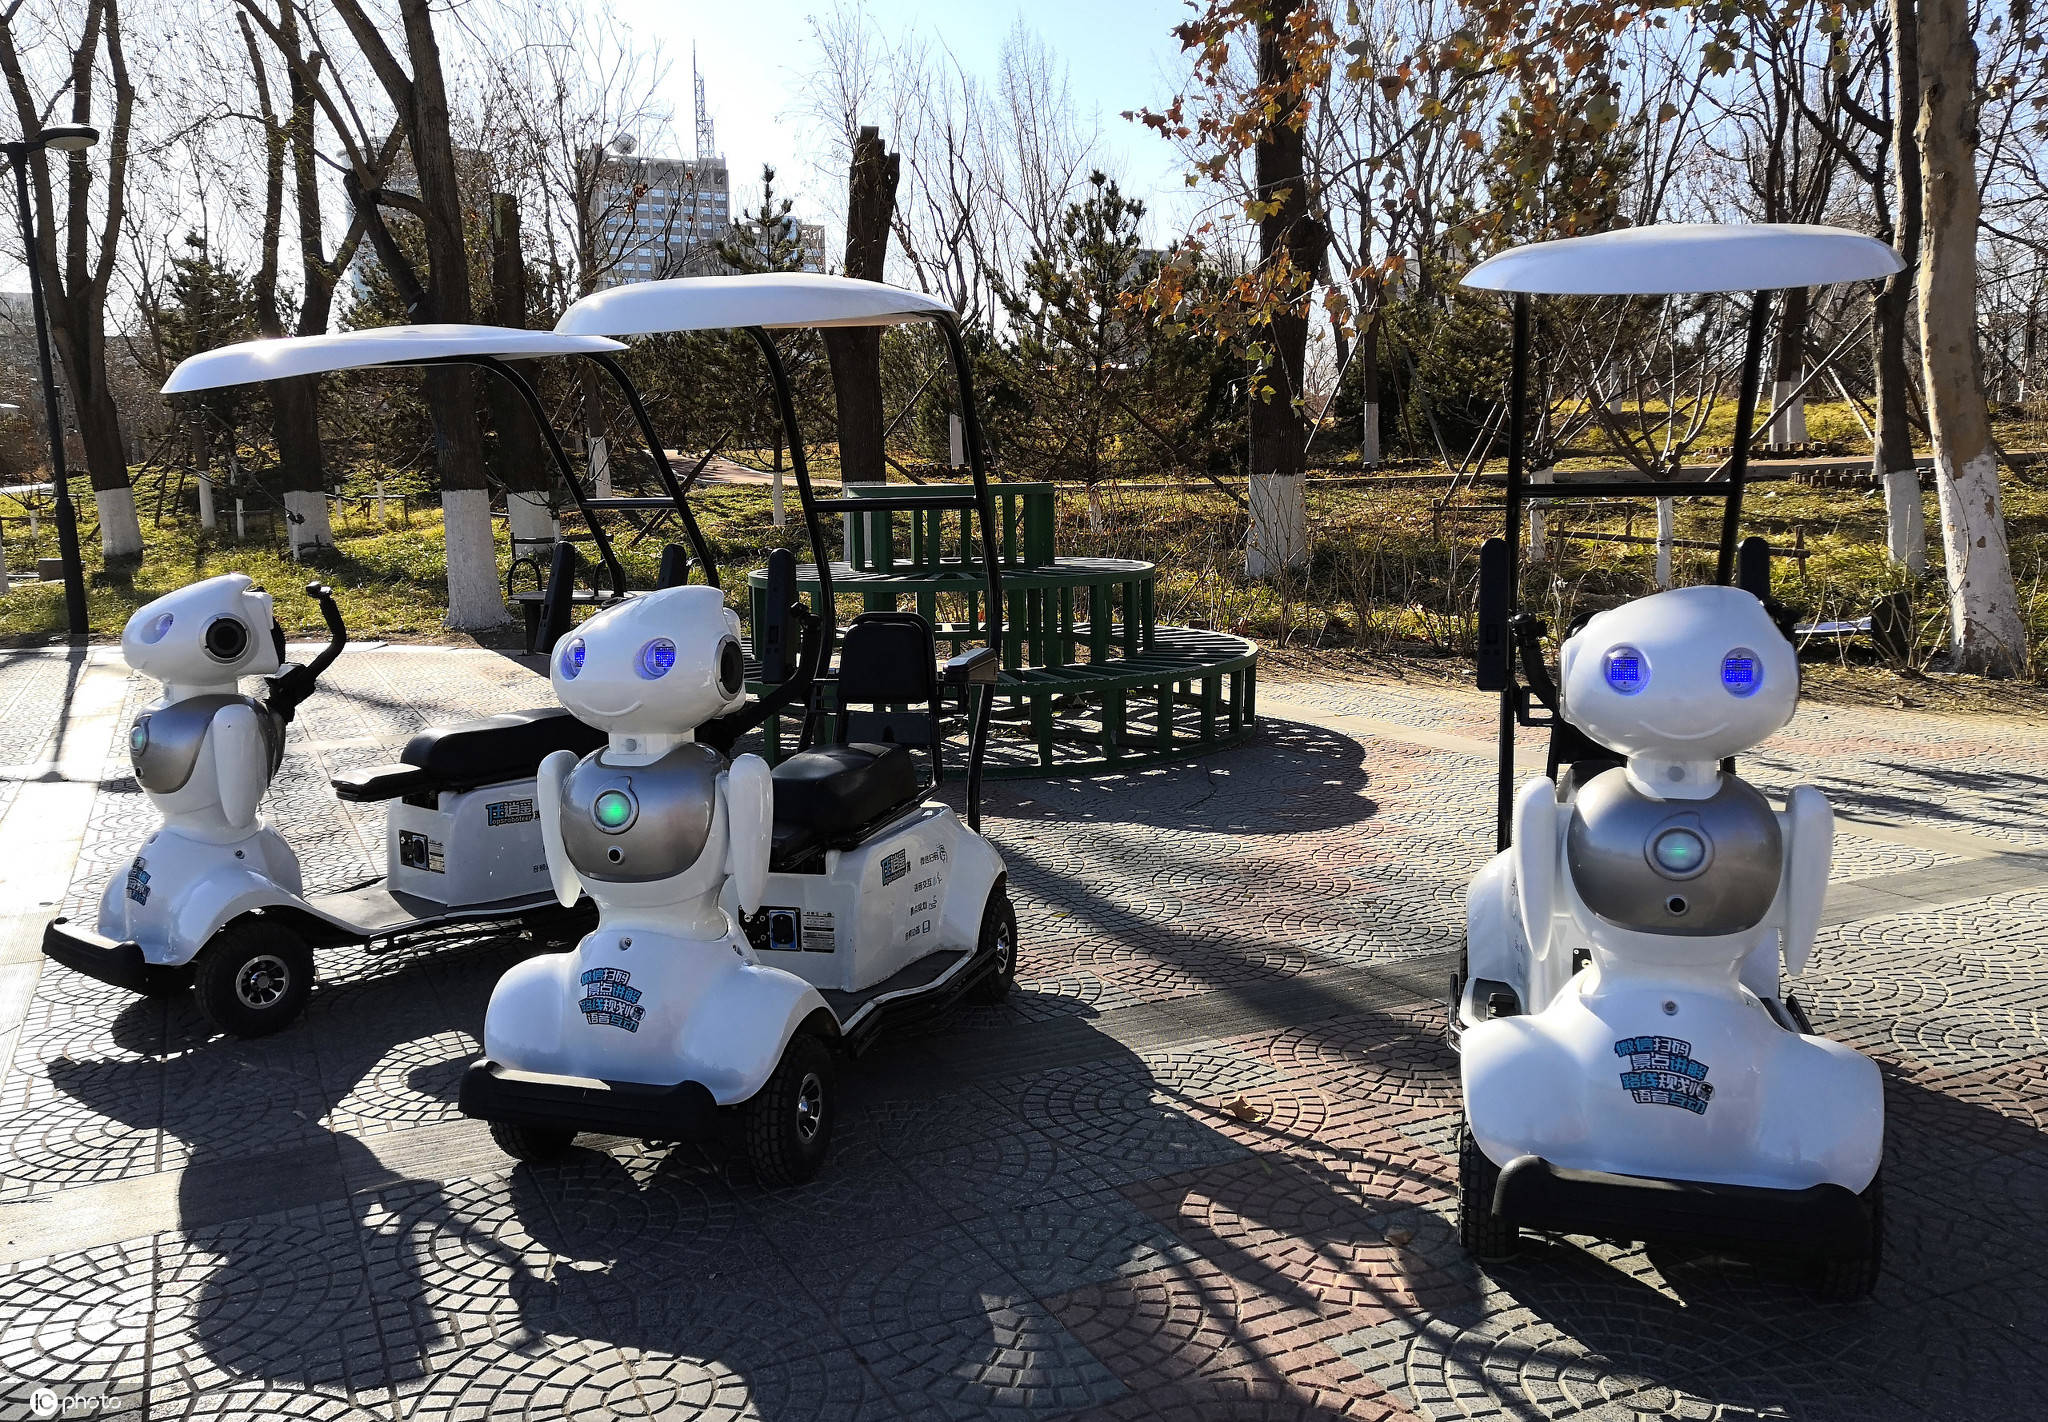 游客|智能伴游机器人亮相莲花池公园 新颖时尚夺眼球